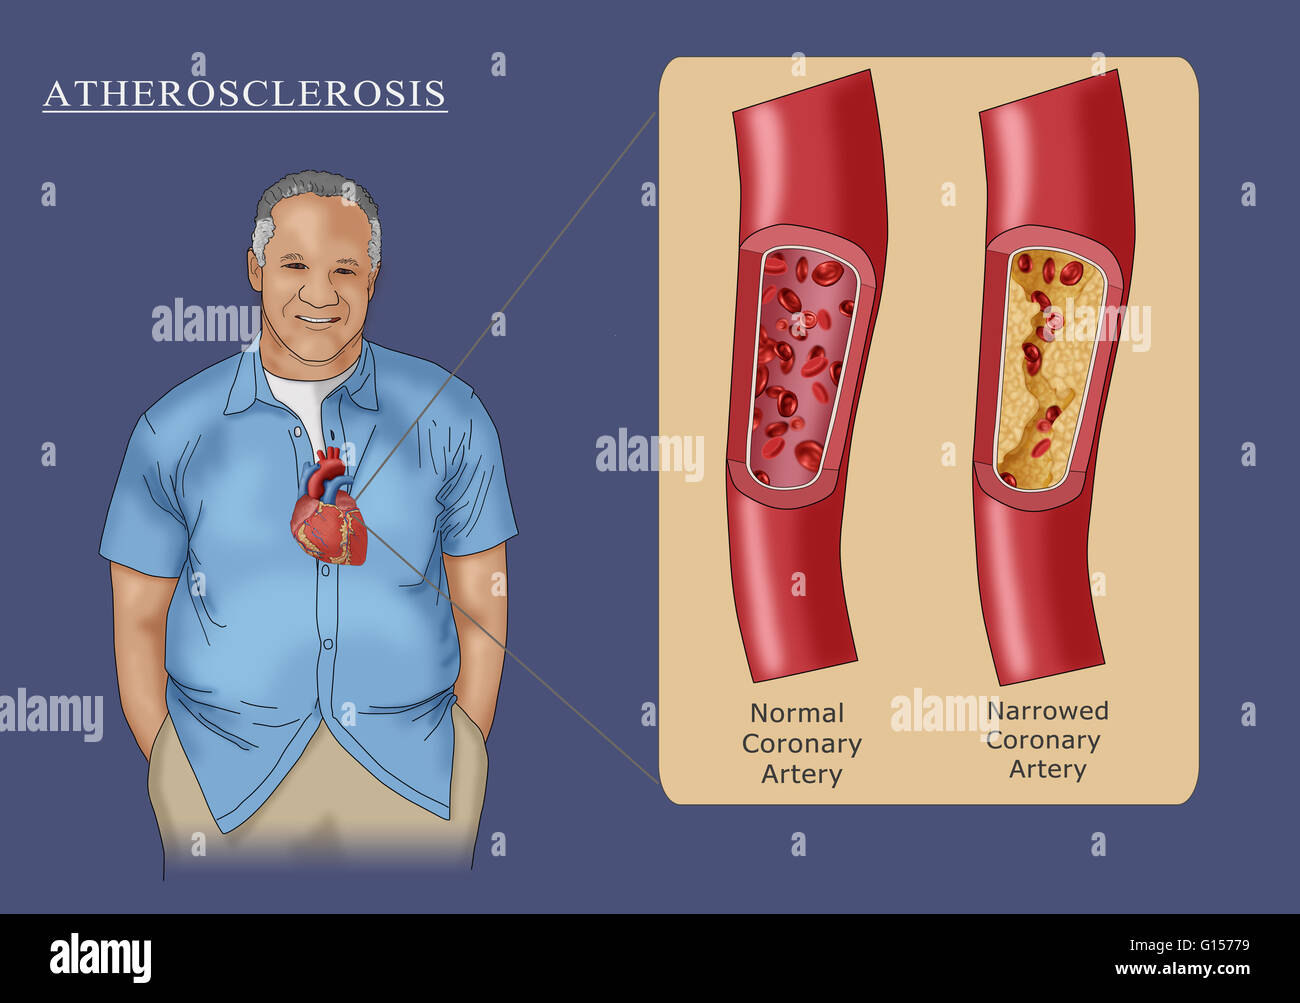 Abbildung zeigt einen Mann mit Atherosklerose, die Begrenzung der Blutfluss durch die Arterie durch Plaque-Blockade (Einschub rechts). Zum Vergleich ist auch eine normale Arterie im Einschub (links) angezeigt. Stockfoto